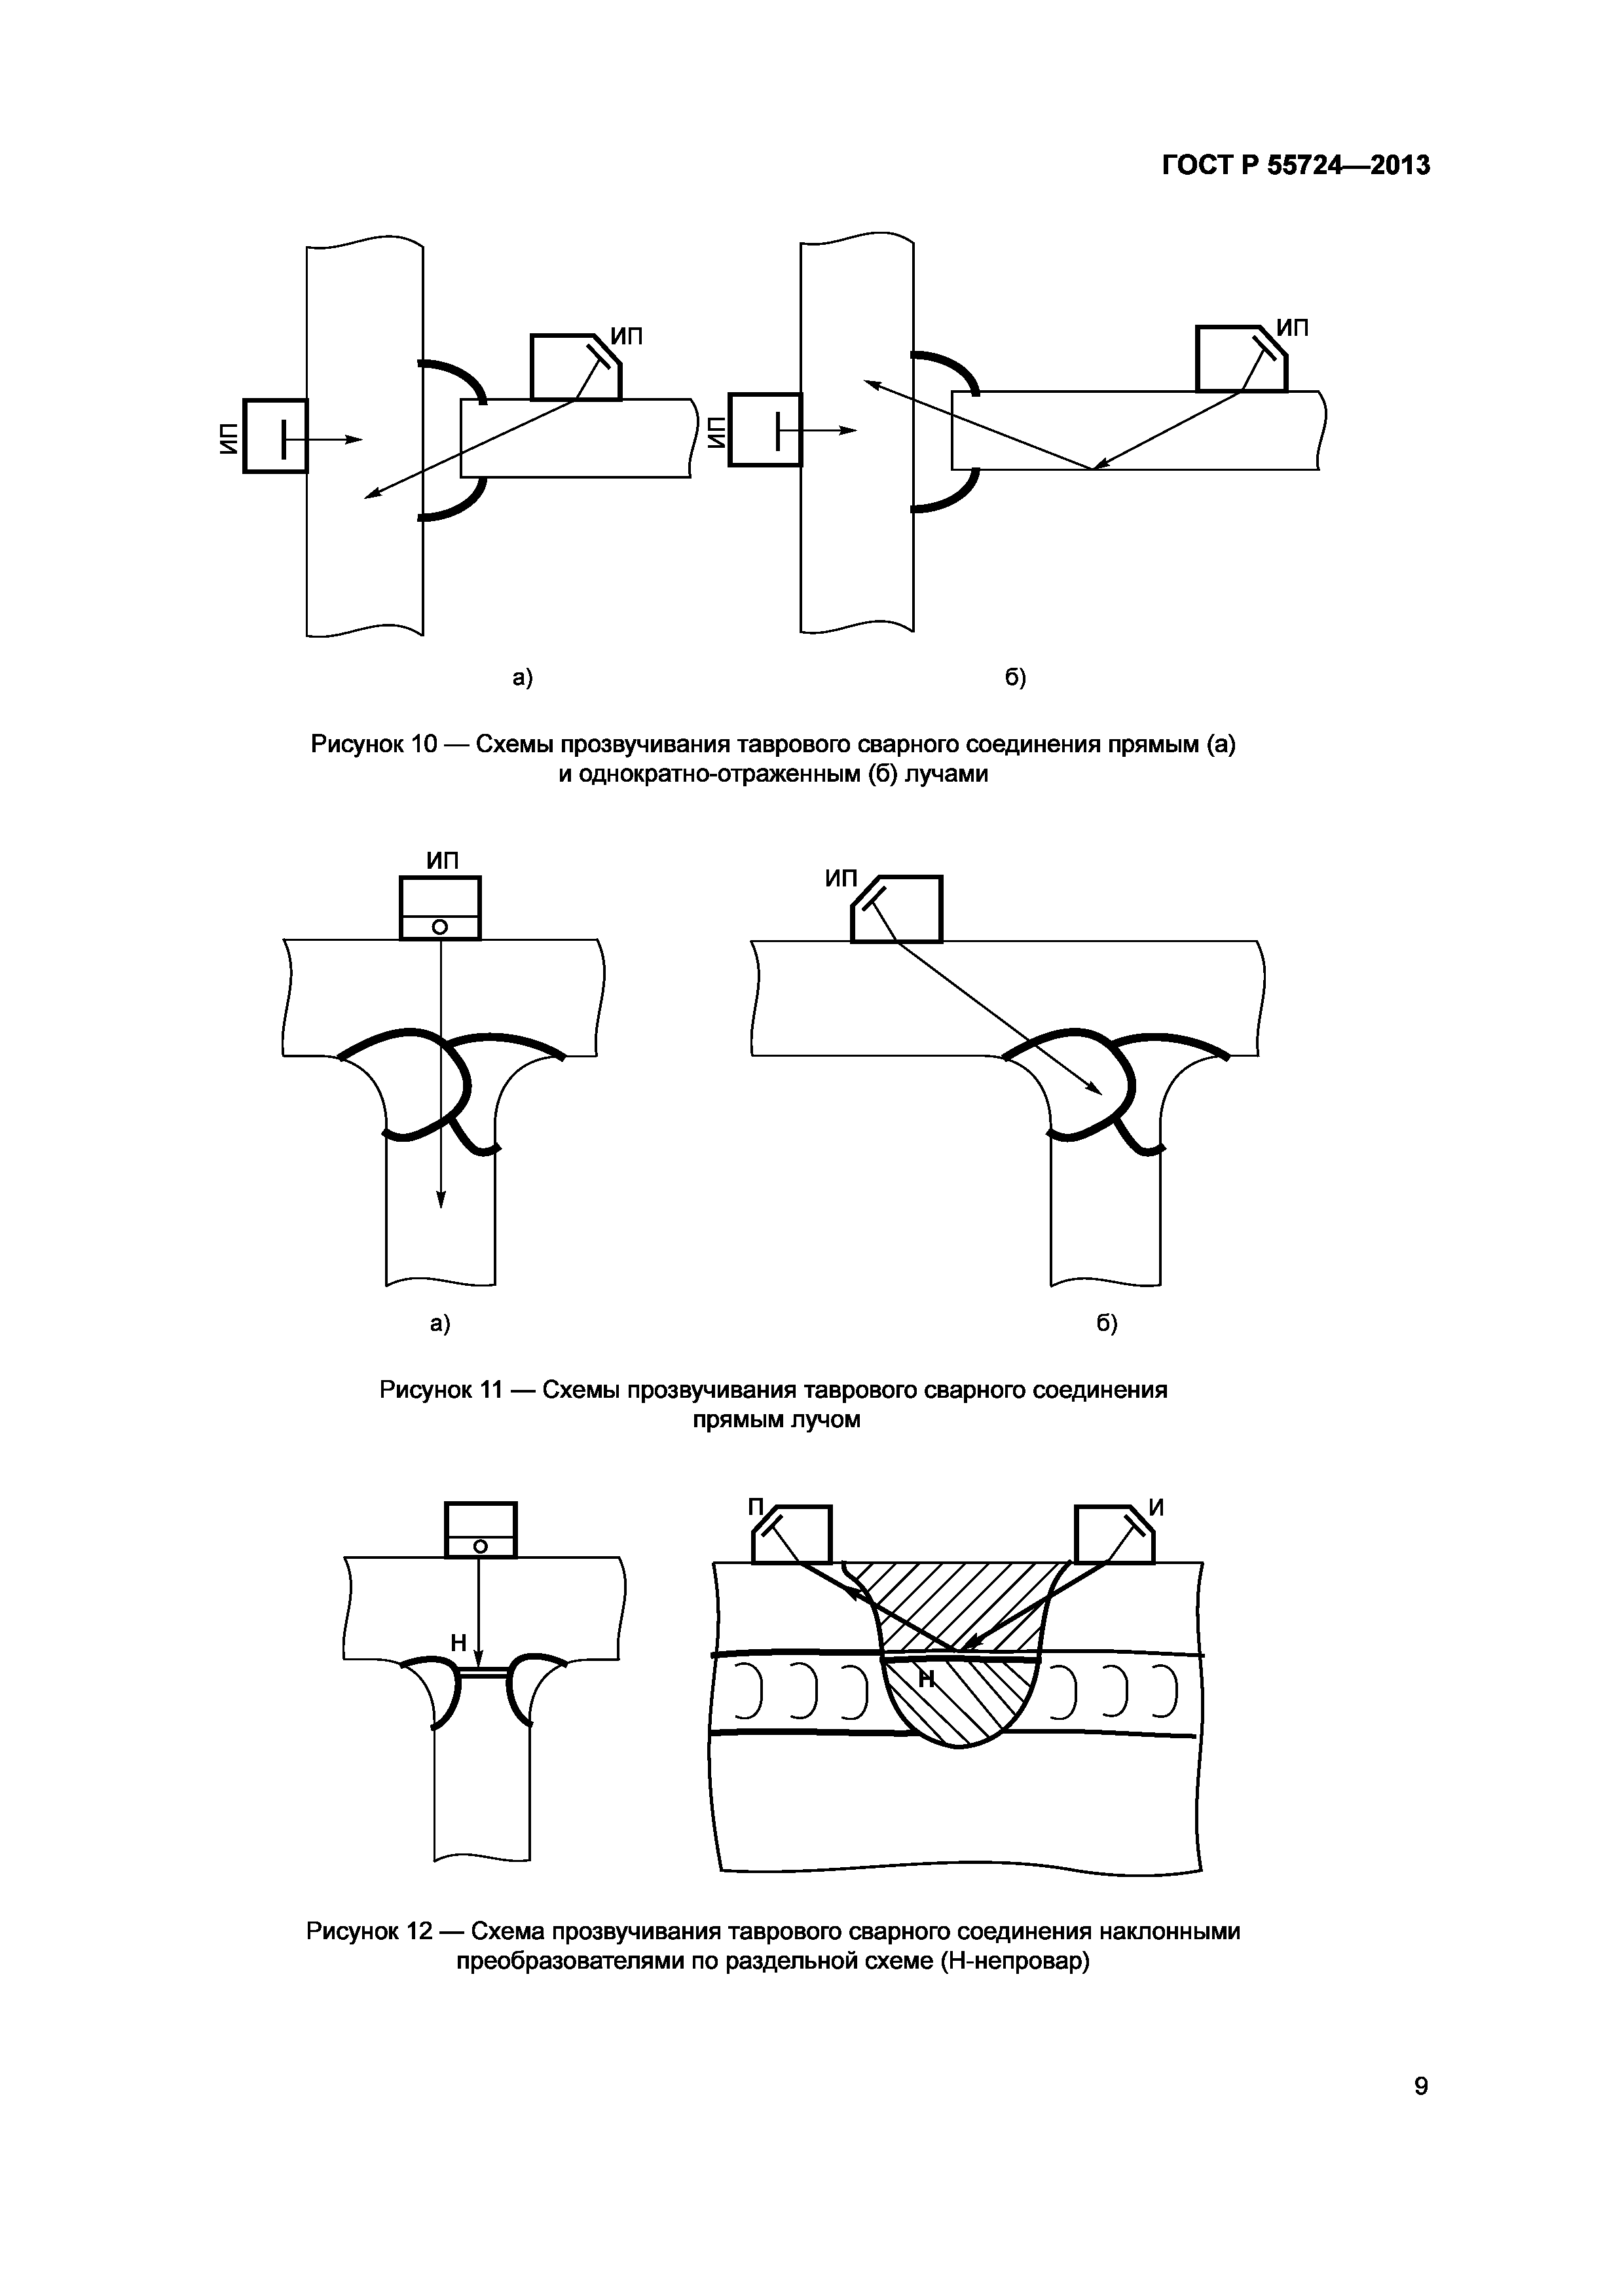 Схема ультразвукового контроля таврового соединения